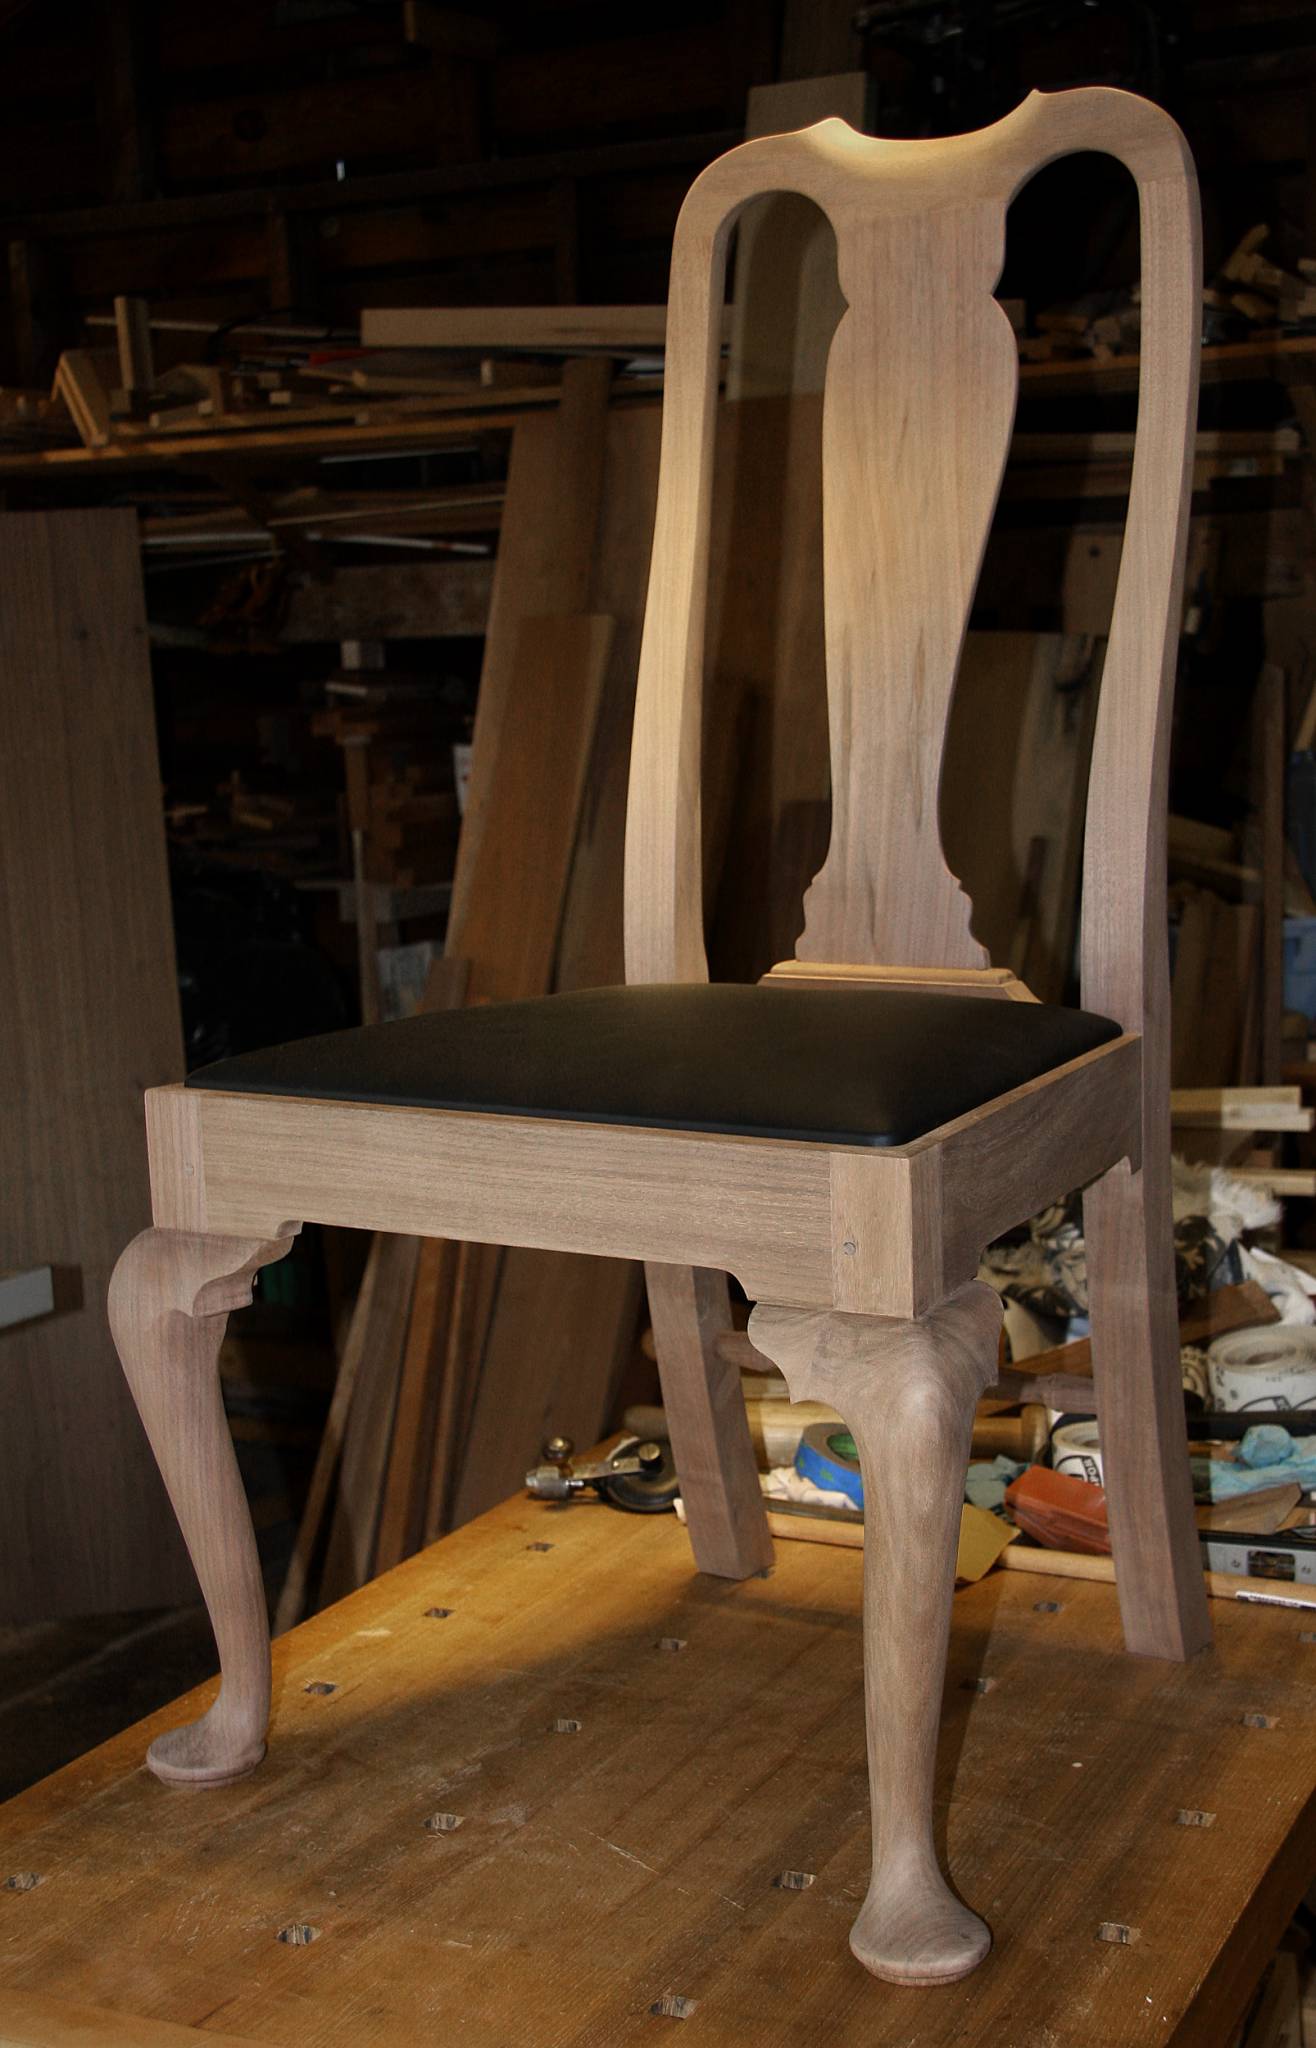 Queen Anne chair workshop